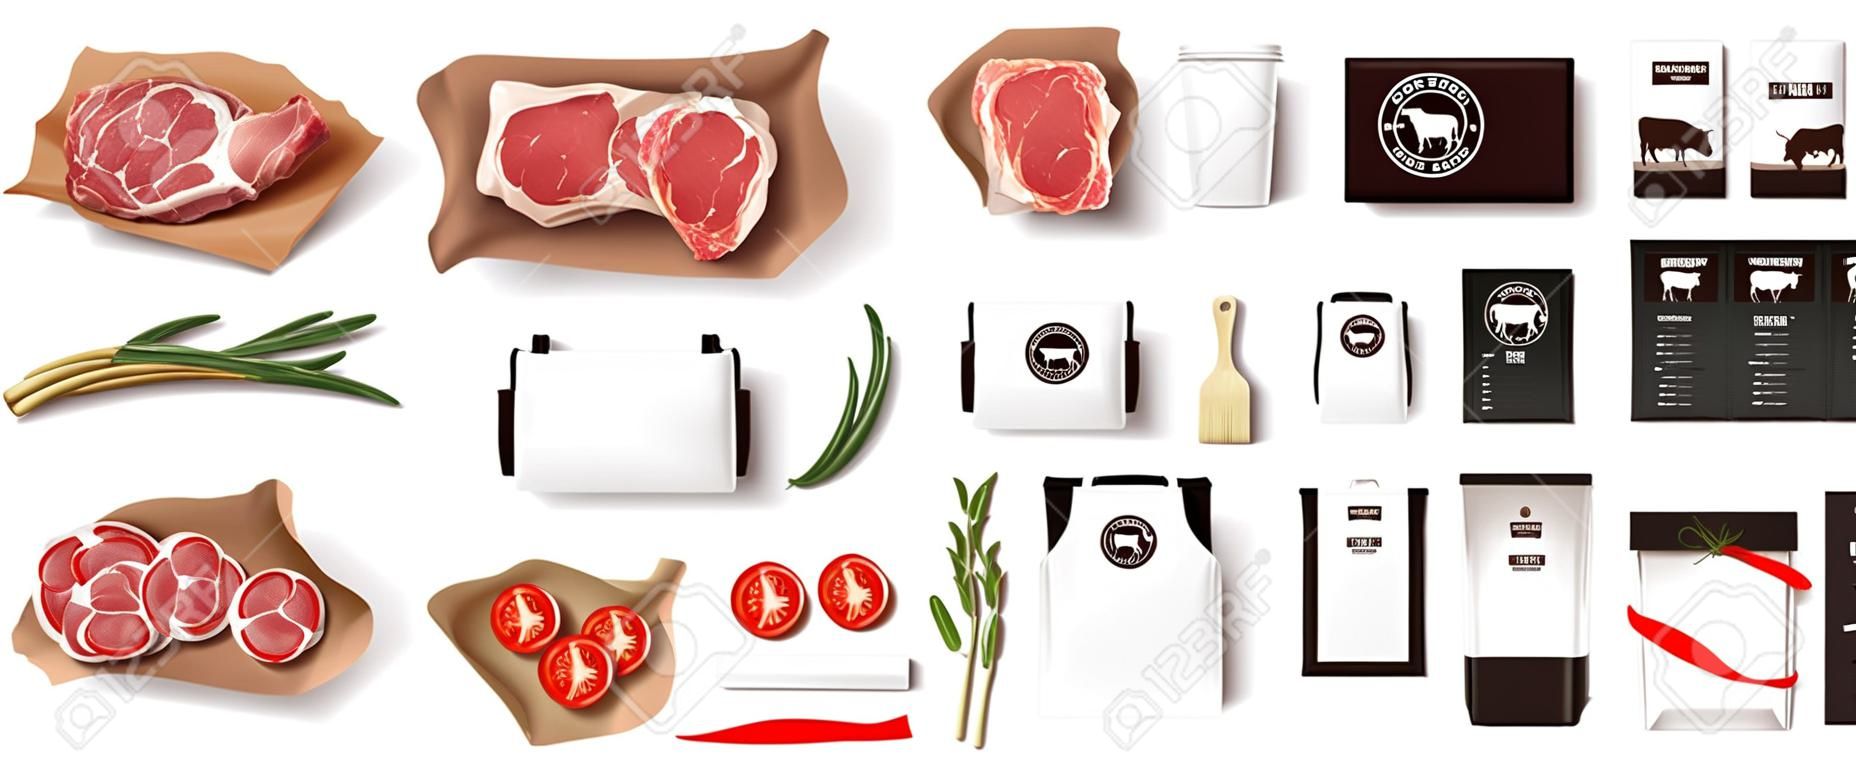 Różnorodność potraw w sklepie mięsnym. Zestaw makieta tożsamości marki restauracji na białym tle. Znakowanie elementów opakowań do sklepu mięsnego, kawiarni lub steak house. żywność w supermarkecie w paczce. Wektor